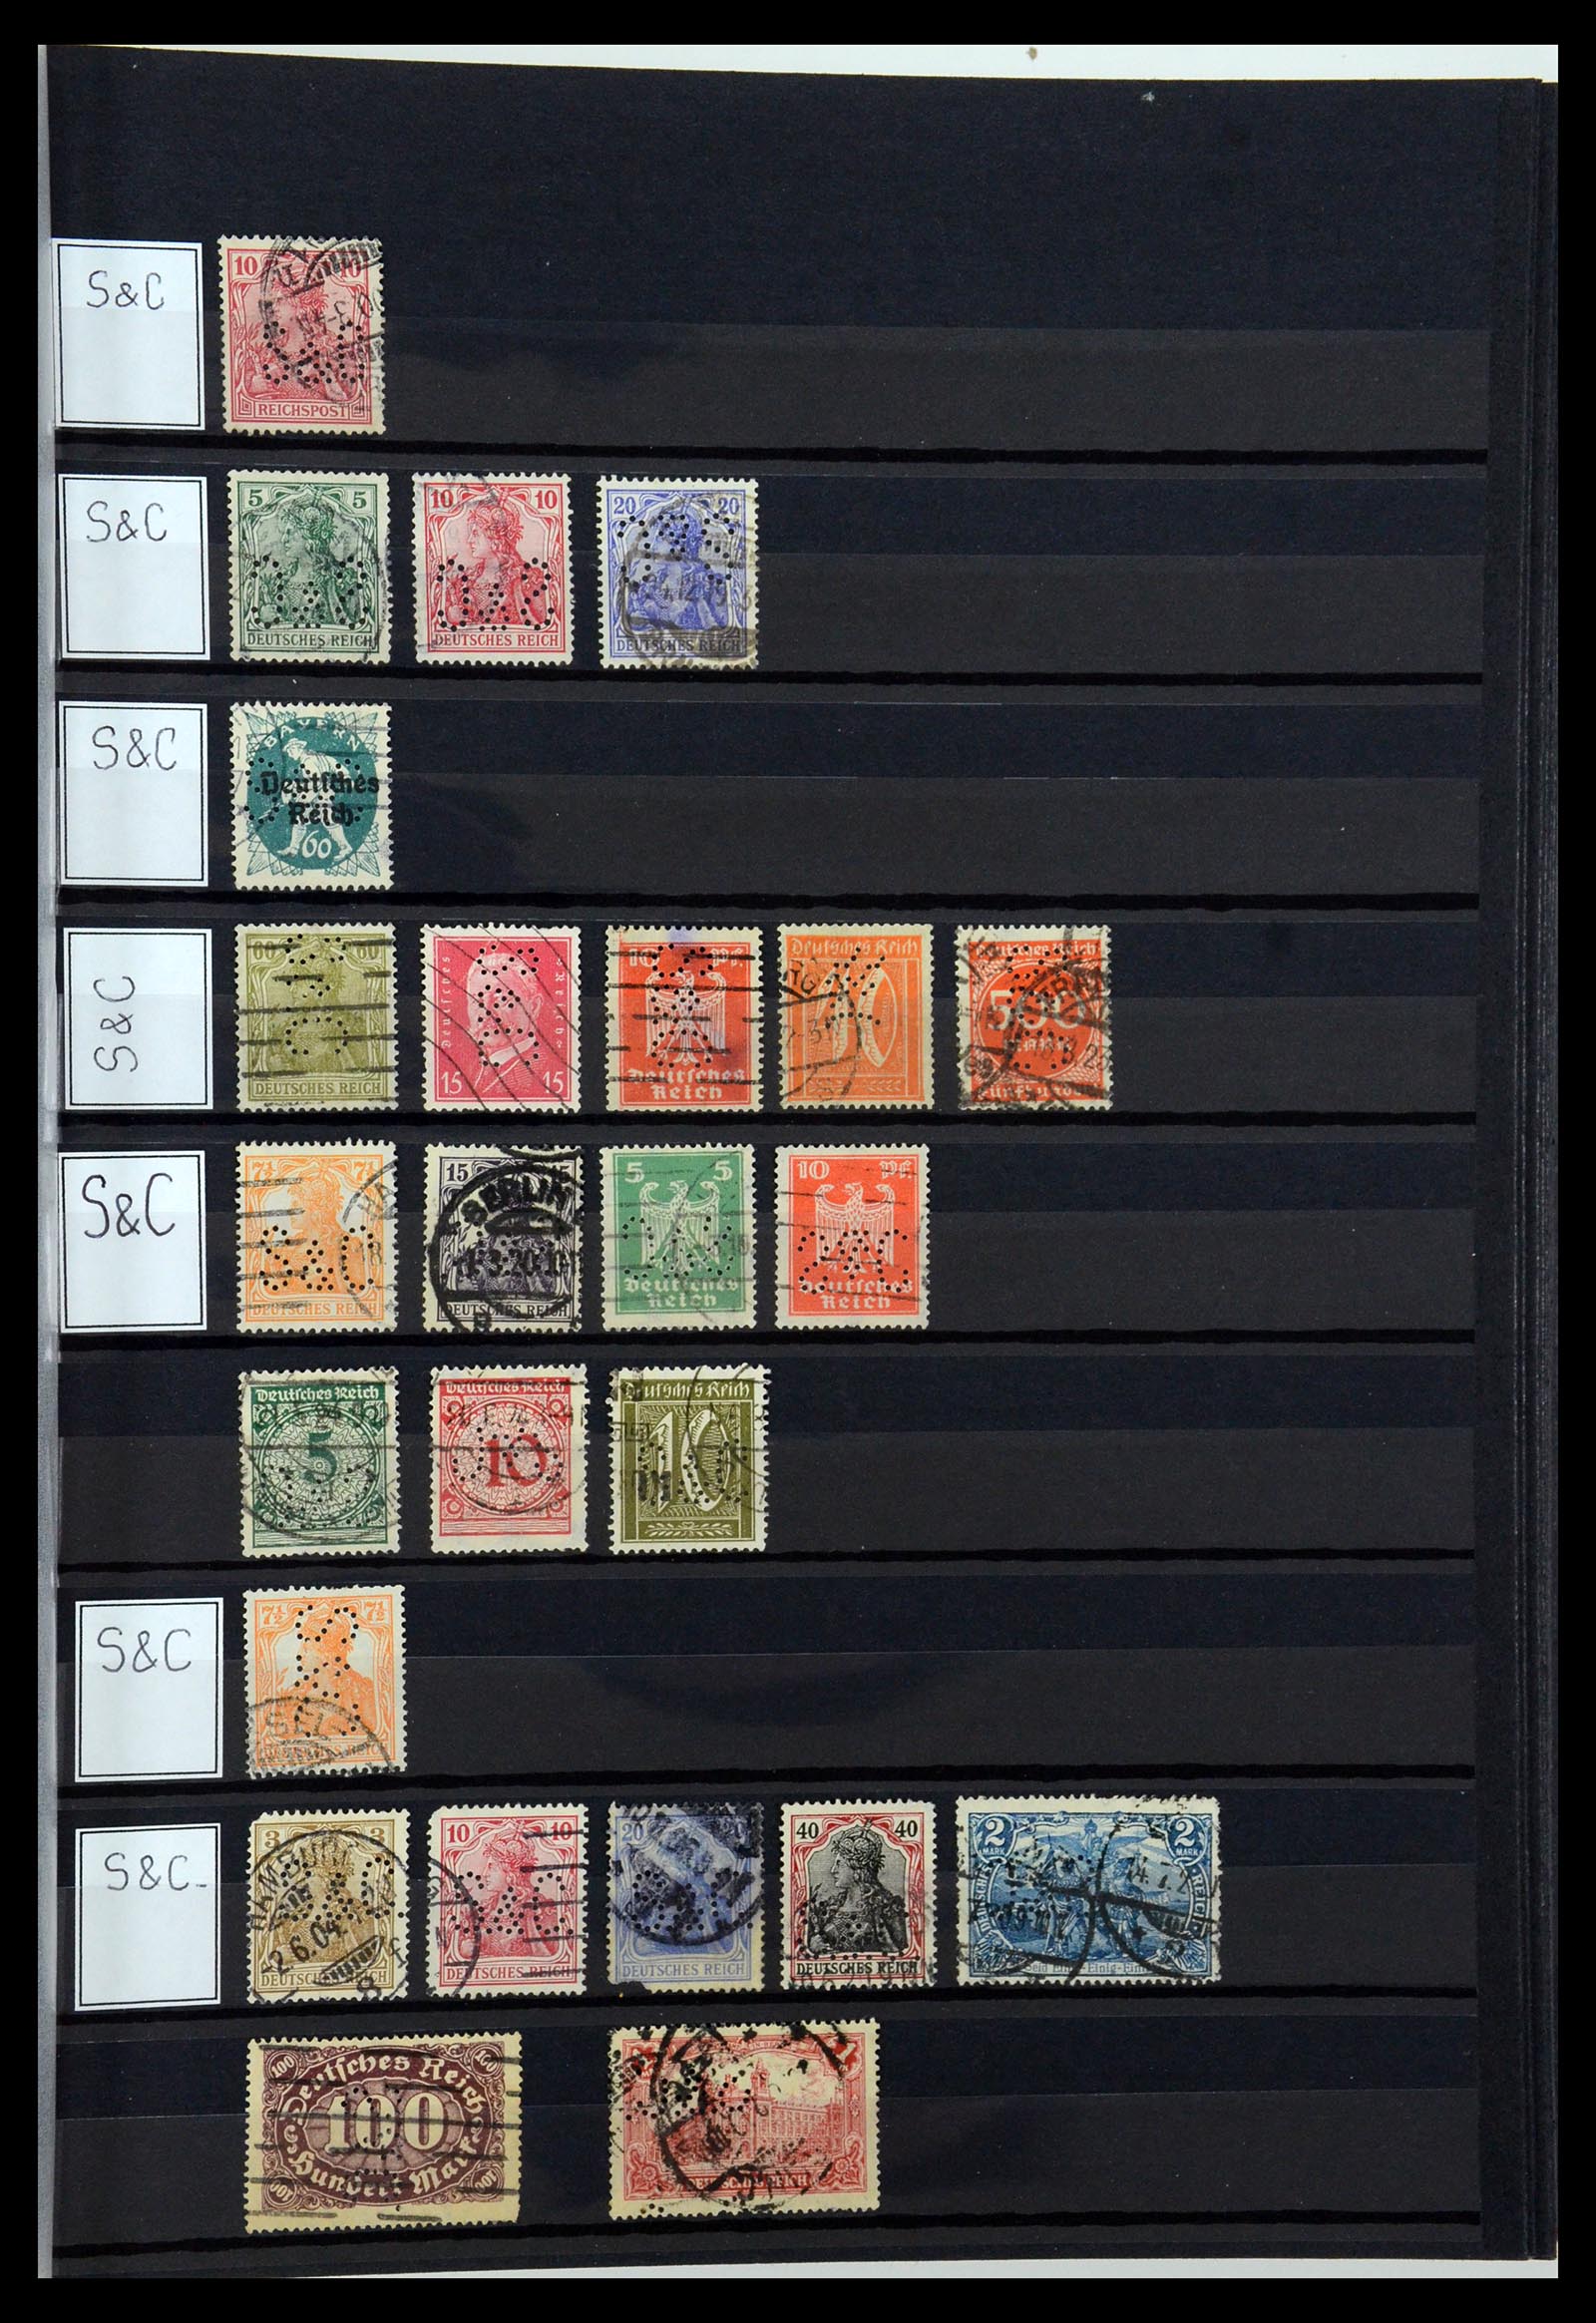 36405 304 - Stamp collection 36405 German Reich perfins 1880-1945.